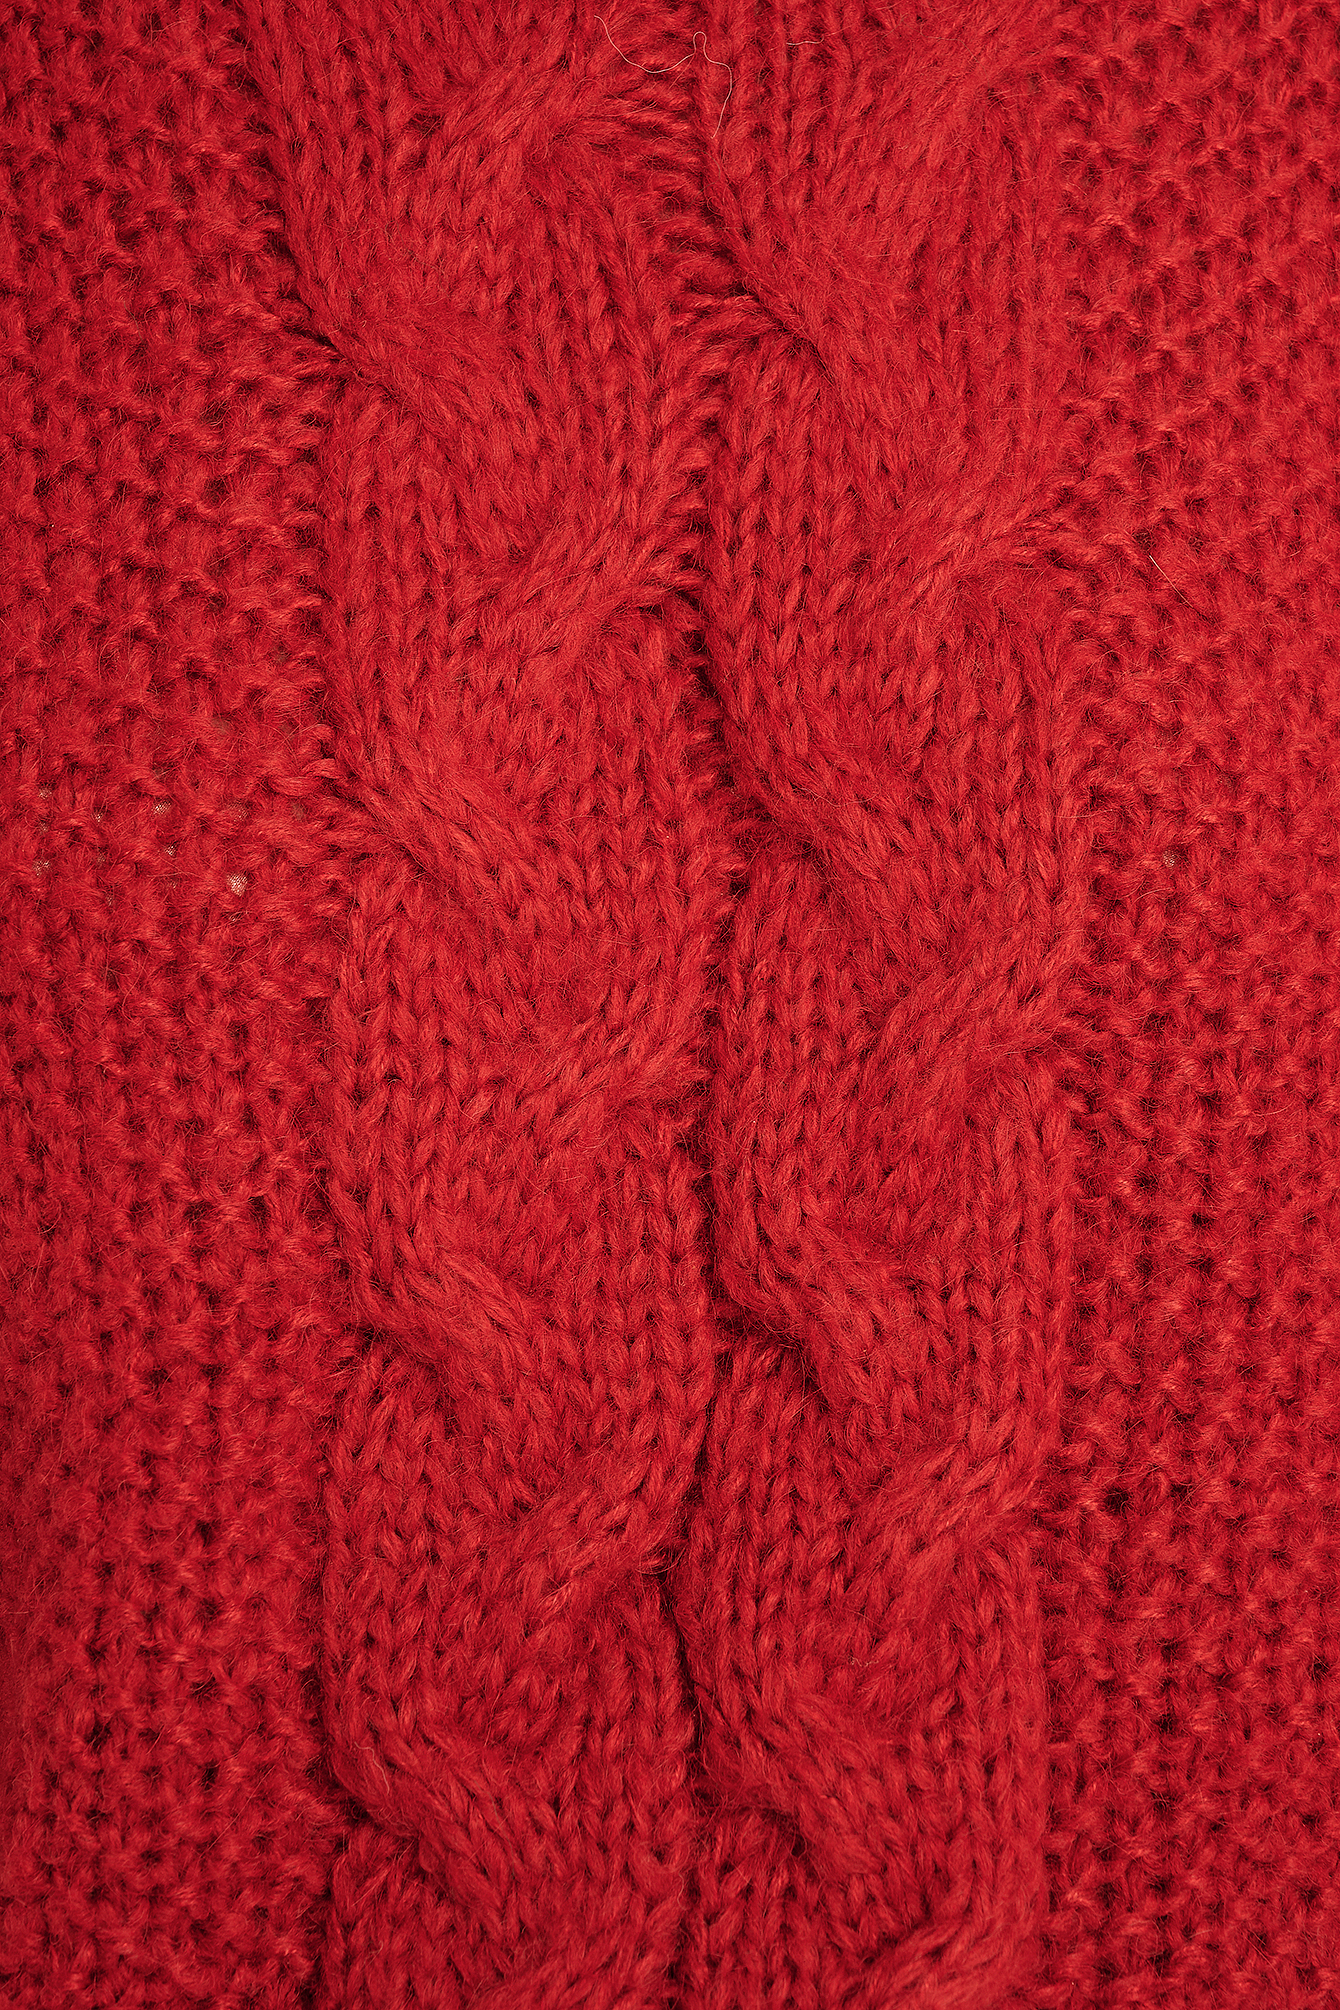 ka na ta silk knit red - csihealth.net